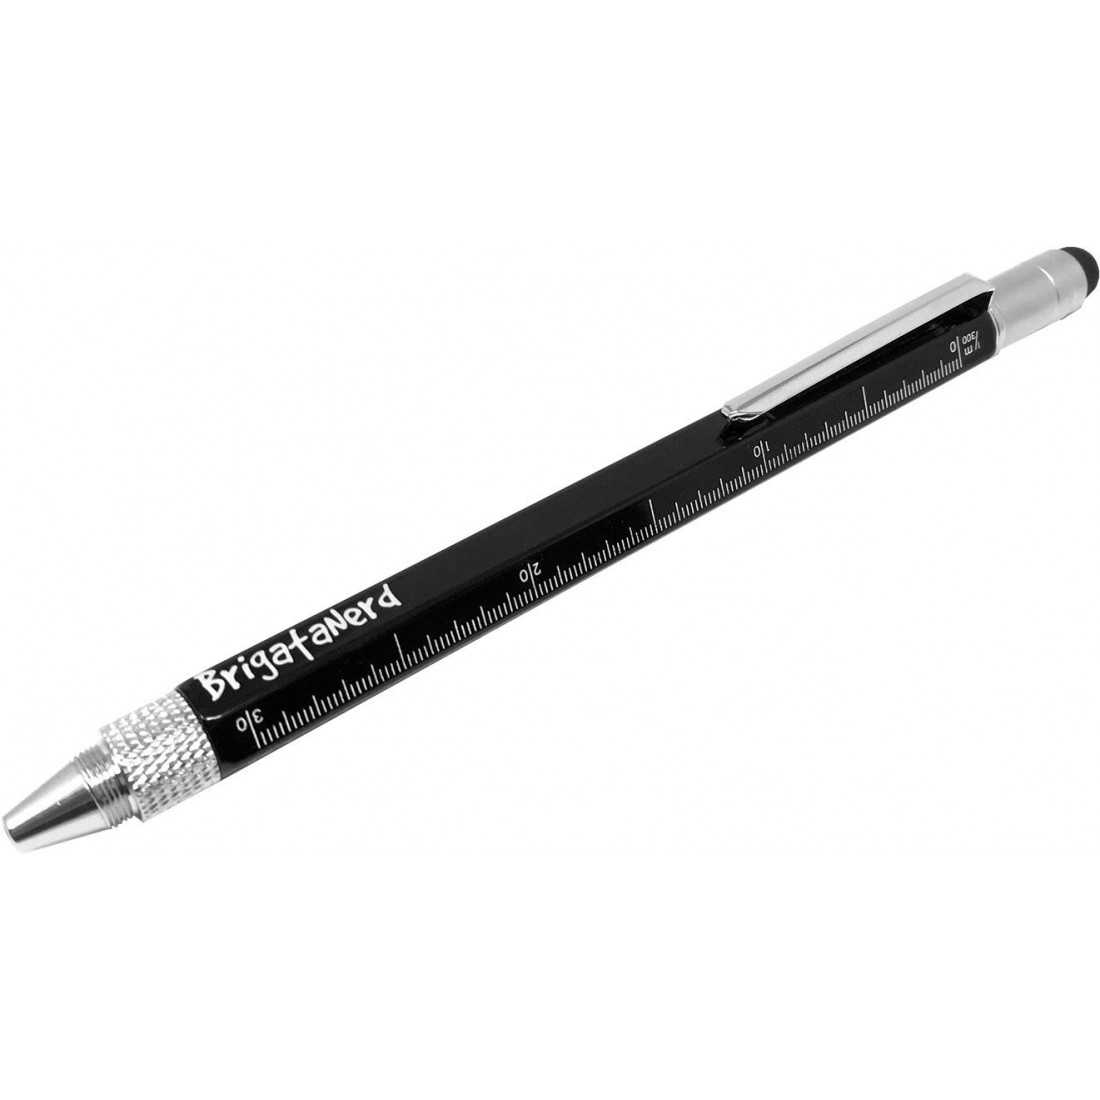 Multipalabra 6 en 1 herramienta multifunción bolígrafo con bolígrafo,  regla, destornillador, una cabeza plana, bolígrafo de pantalla táctil,  medidor